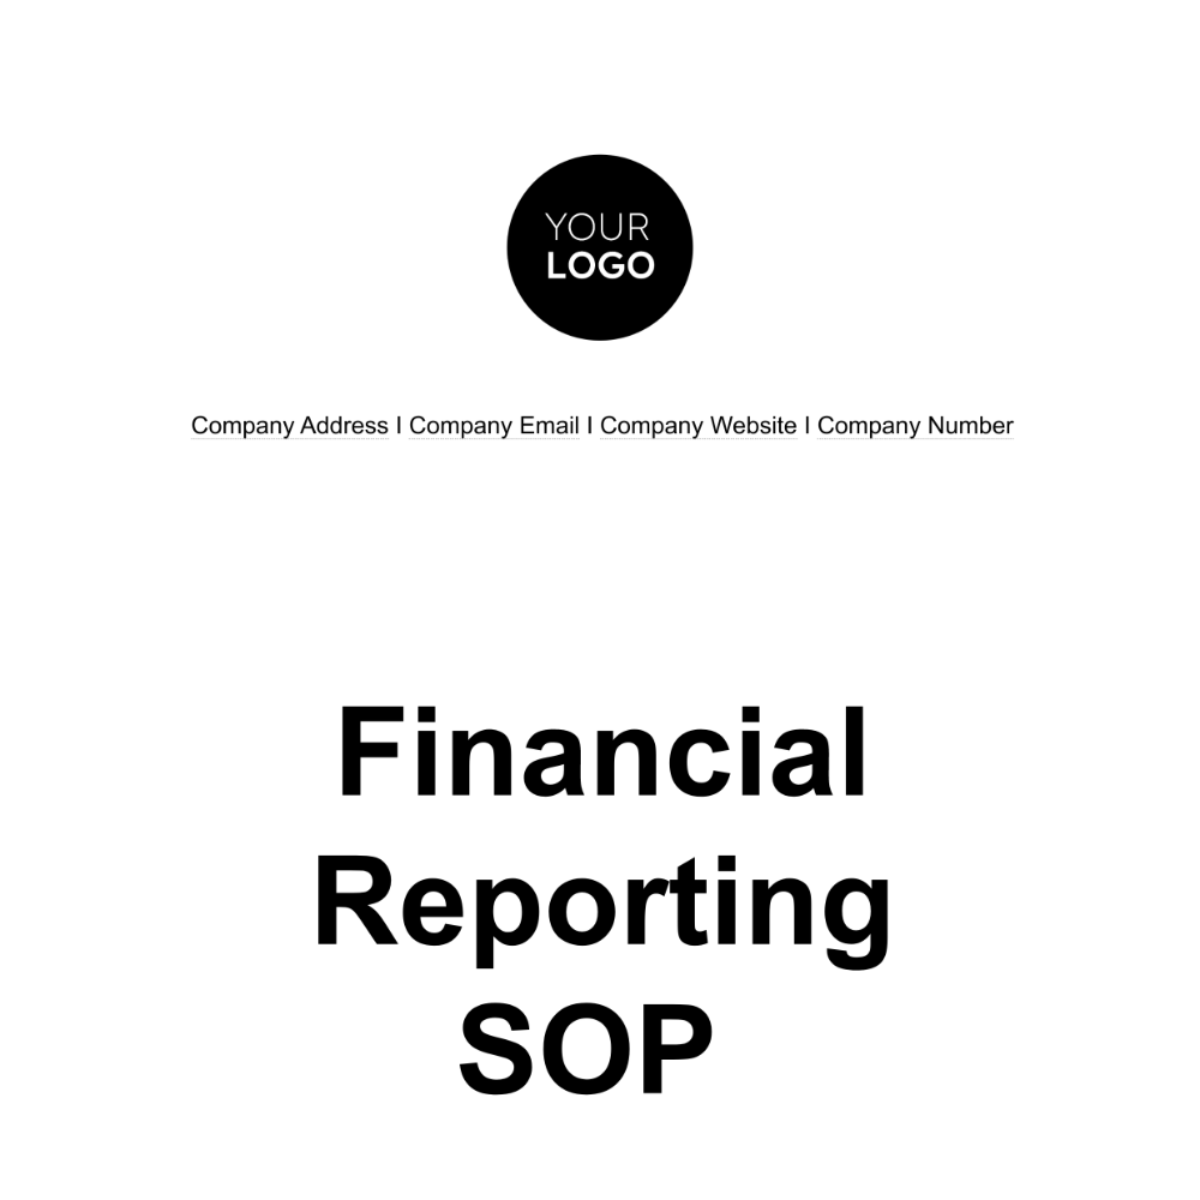 Financial Reporting SOP Template